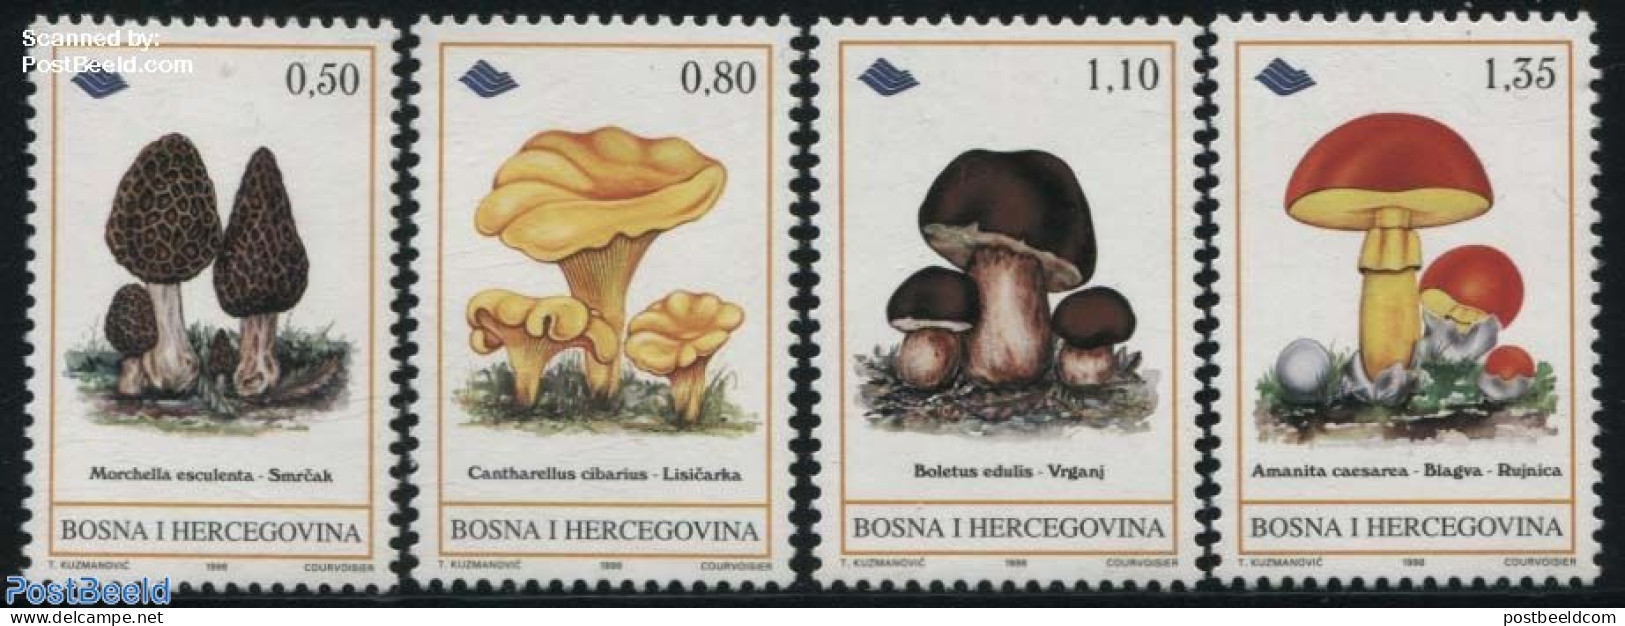 Bosnia Herzegovina 1998 Eatable Mushrooms 4v, Mint NH, Nature - Mushrooms - Pilze